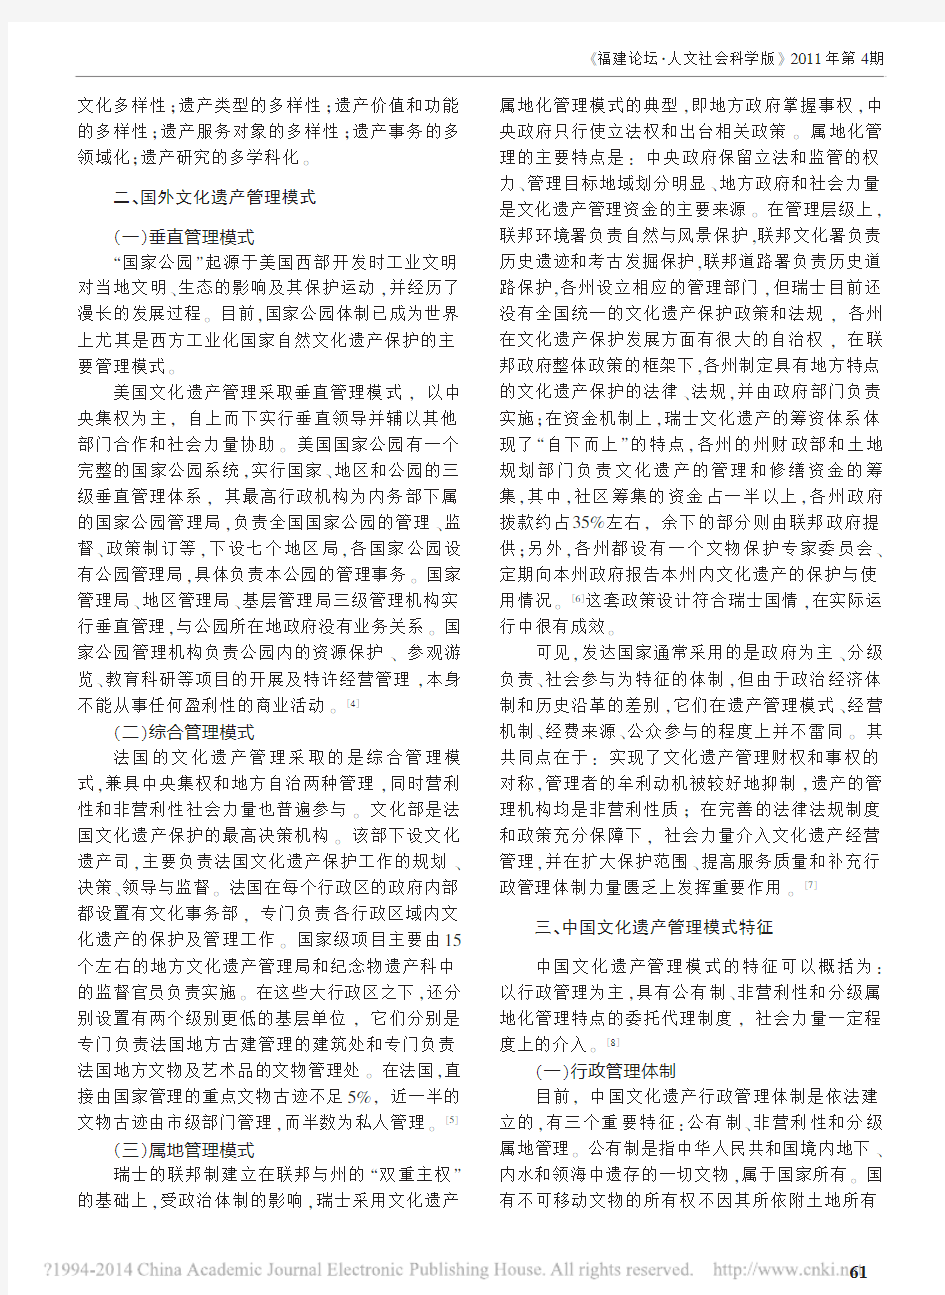 中外文化遗产管理模式比较研究_张国超